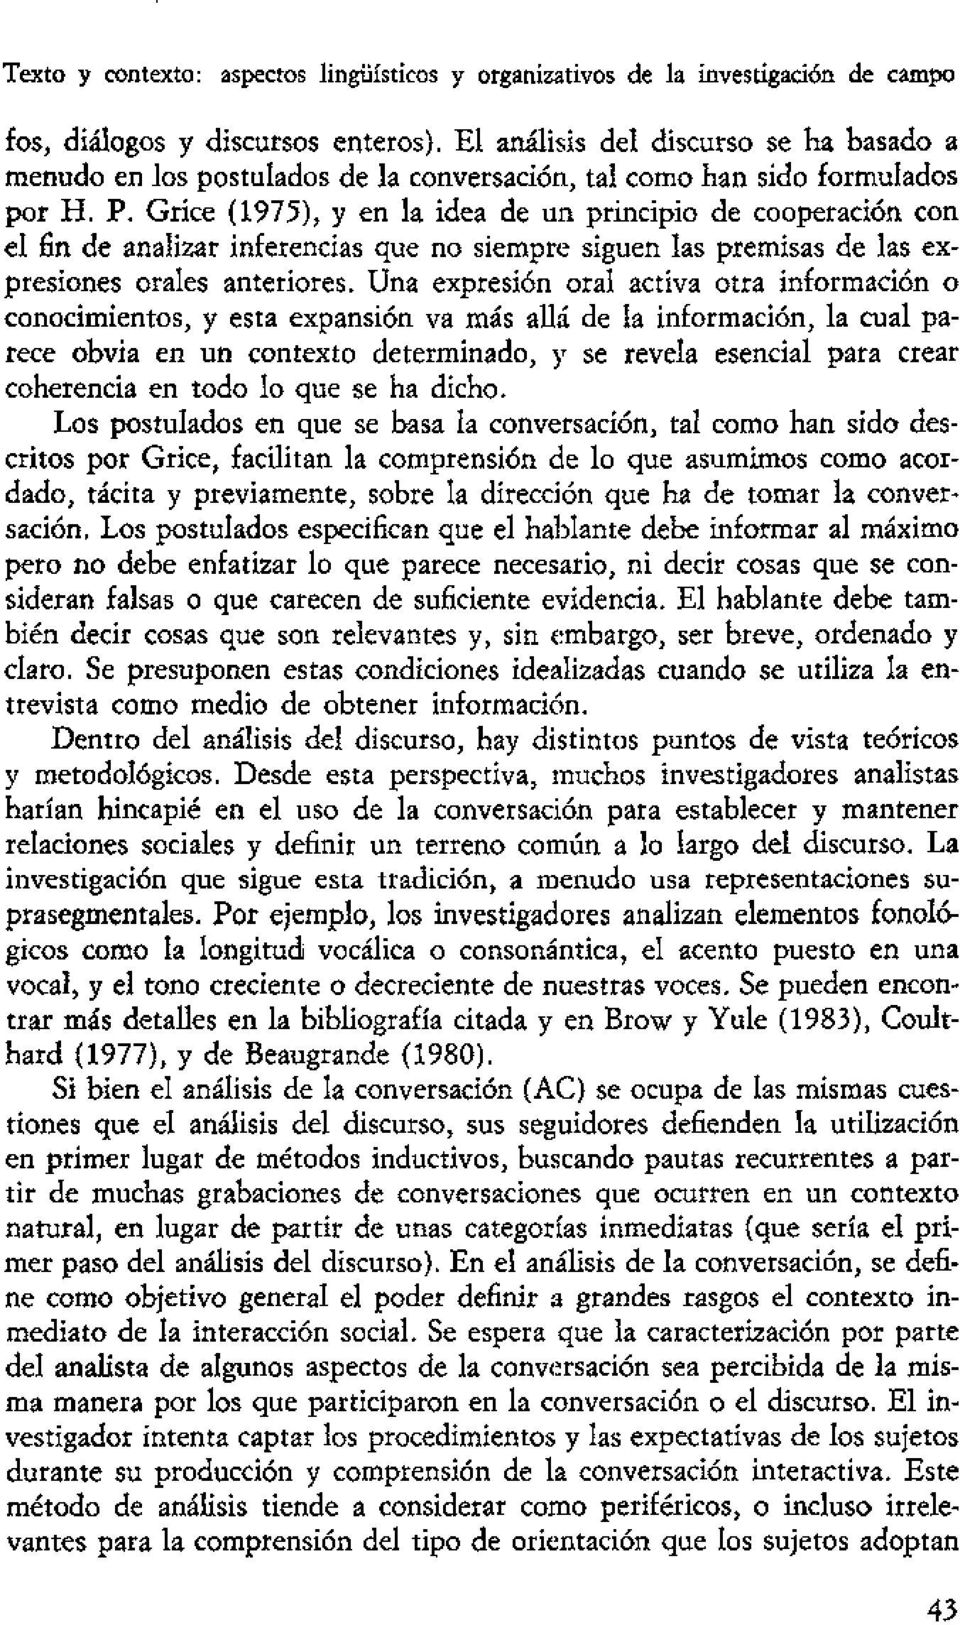 Grice (1975), y en la idea de un principio de cooperación con el fin de analizar inferencias que no siemprrs siguen las premisas de las expresiones orales anteriores.